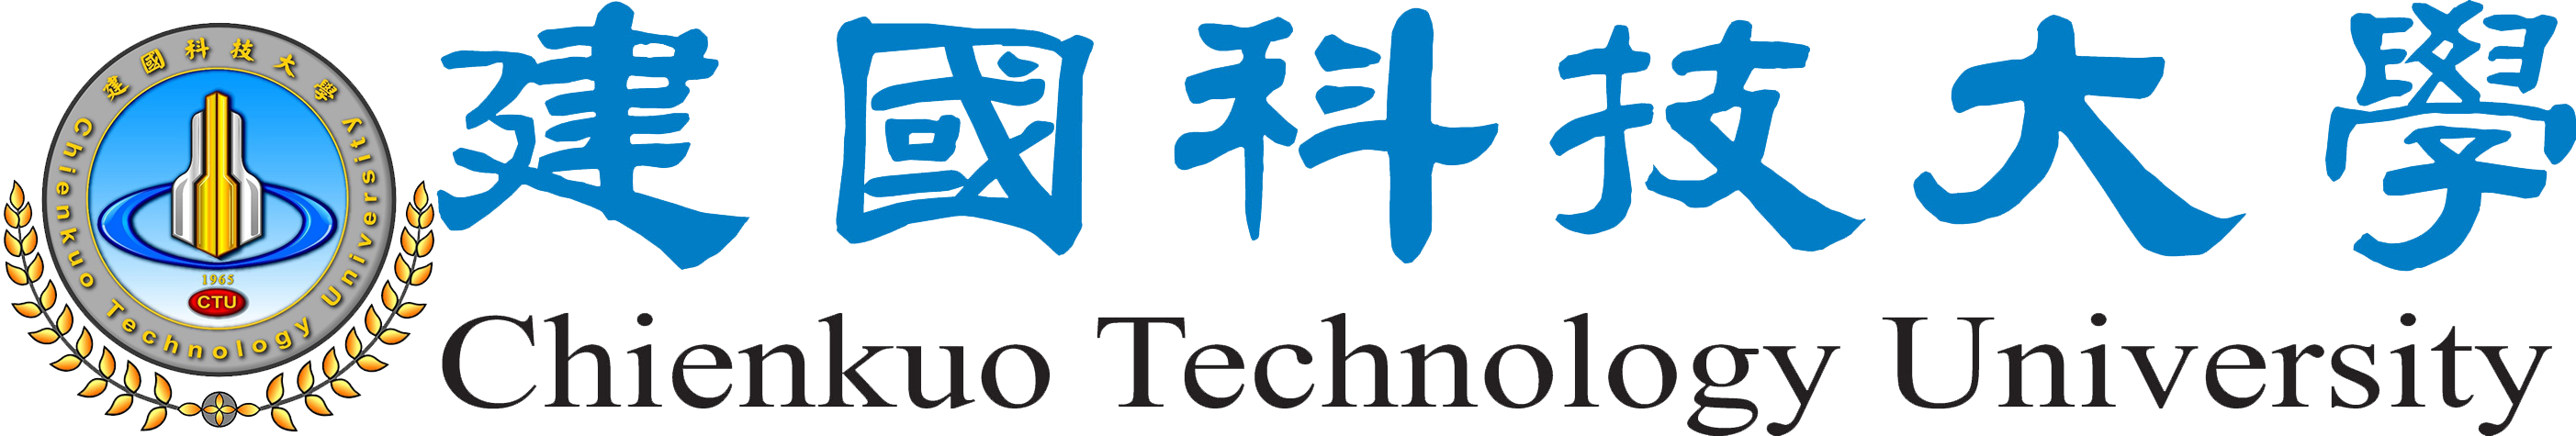 建國科技大學Logo橫式1